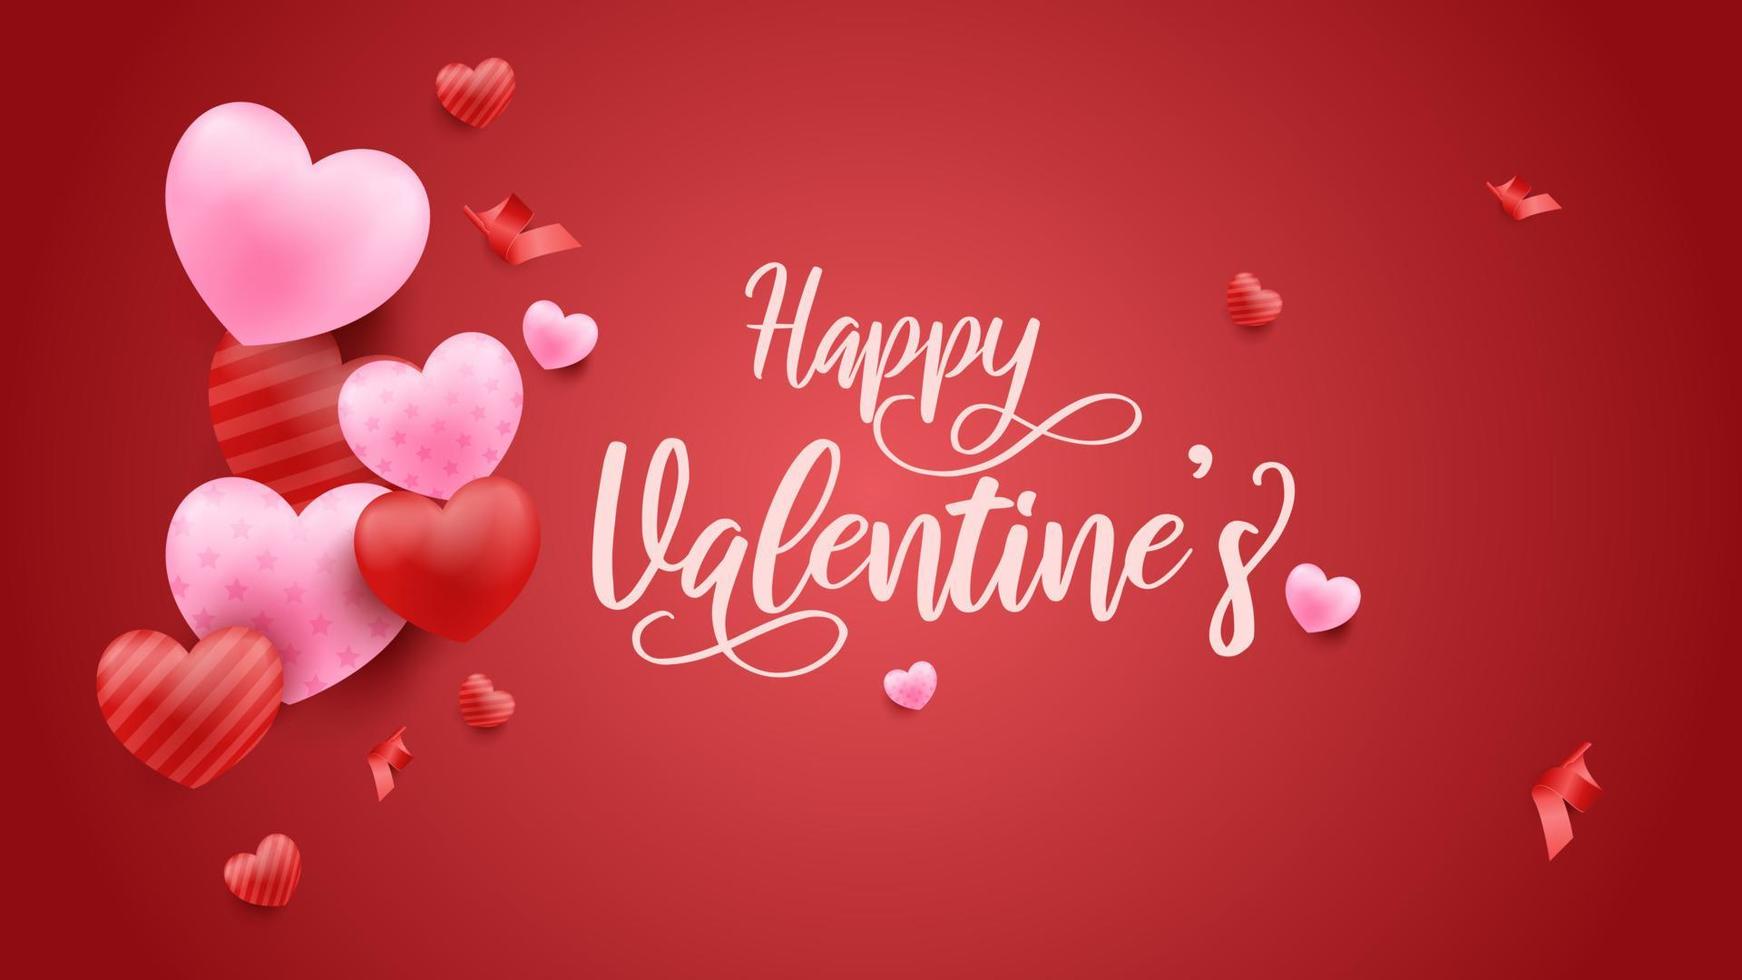 fond rouge saint valentin avec des coeurs 3d. illustration vectorielle. jolie bannière d'amour ou carte de voeux. vecteur